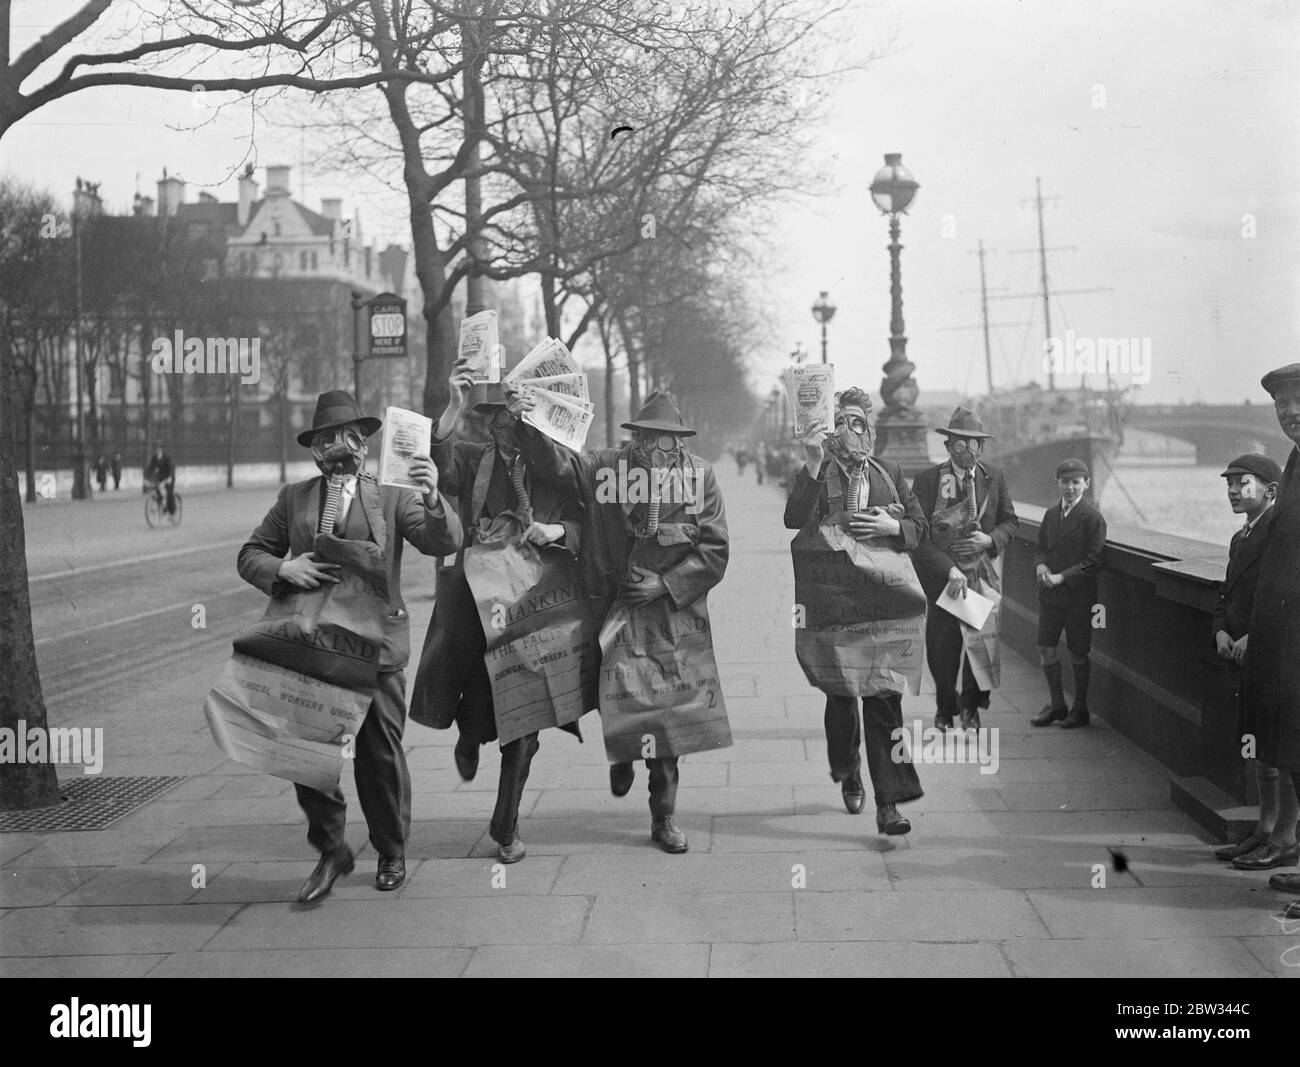 Gasmaskierte Demonstranten veranstalten die Maiparade in London. Demonstranten tragen Gasmasken und tragen Plakate drängen auf die Abschaffung der Gas-und chemischen Krieg, leitete die Maifest Parade durch London, die von der Uferstraße begann. Demonstranten weraing Gasmasken marschieren entlang der Embankment, London bei der Demonstration am 1. Mai. 29. April 1932 Stockfoto